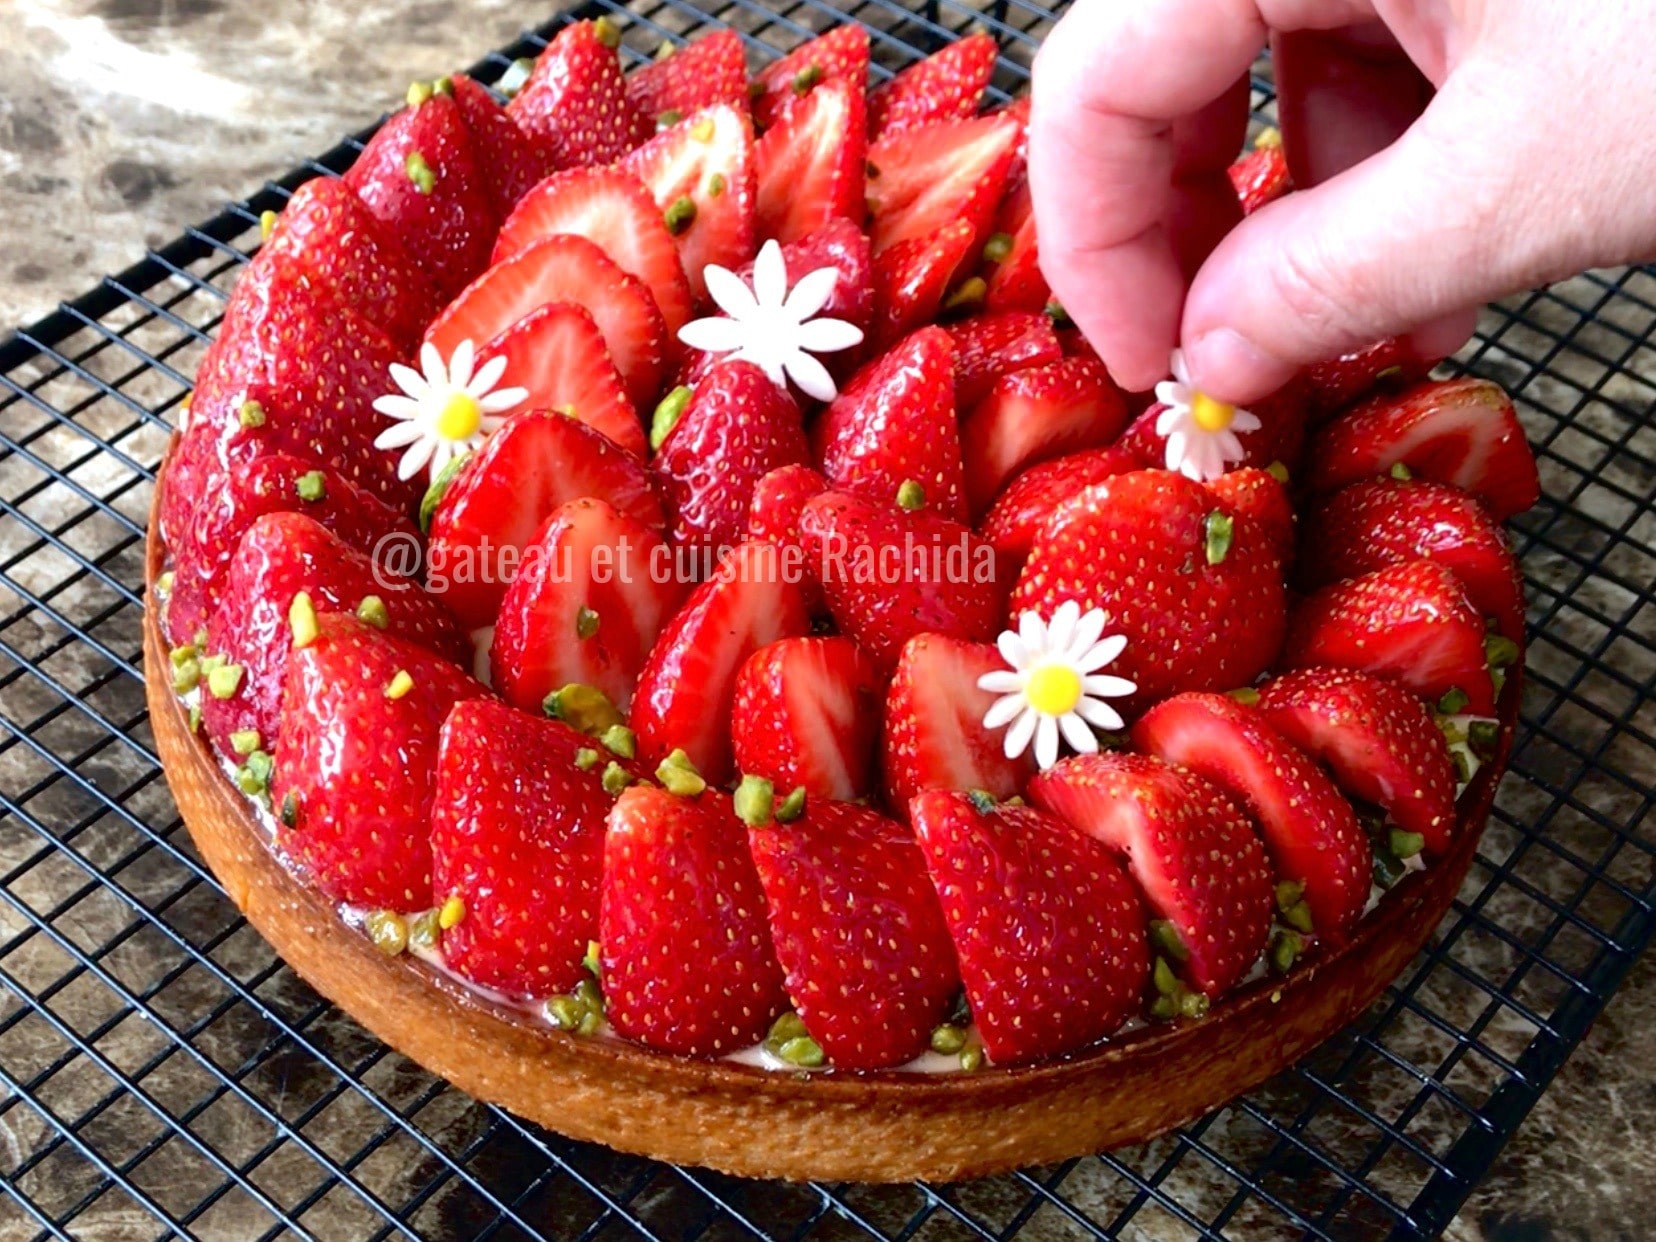 7 astuces pour réussir la crème pâtissière de votre tarte aux fraises